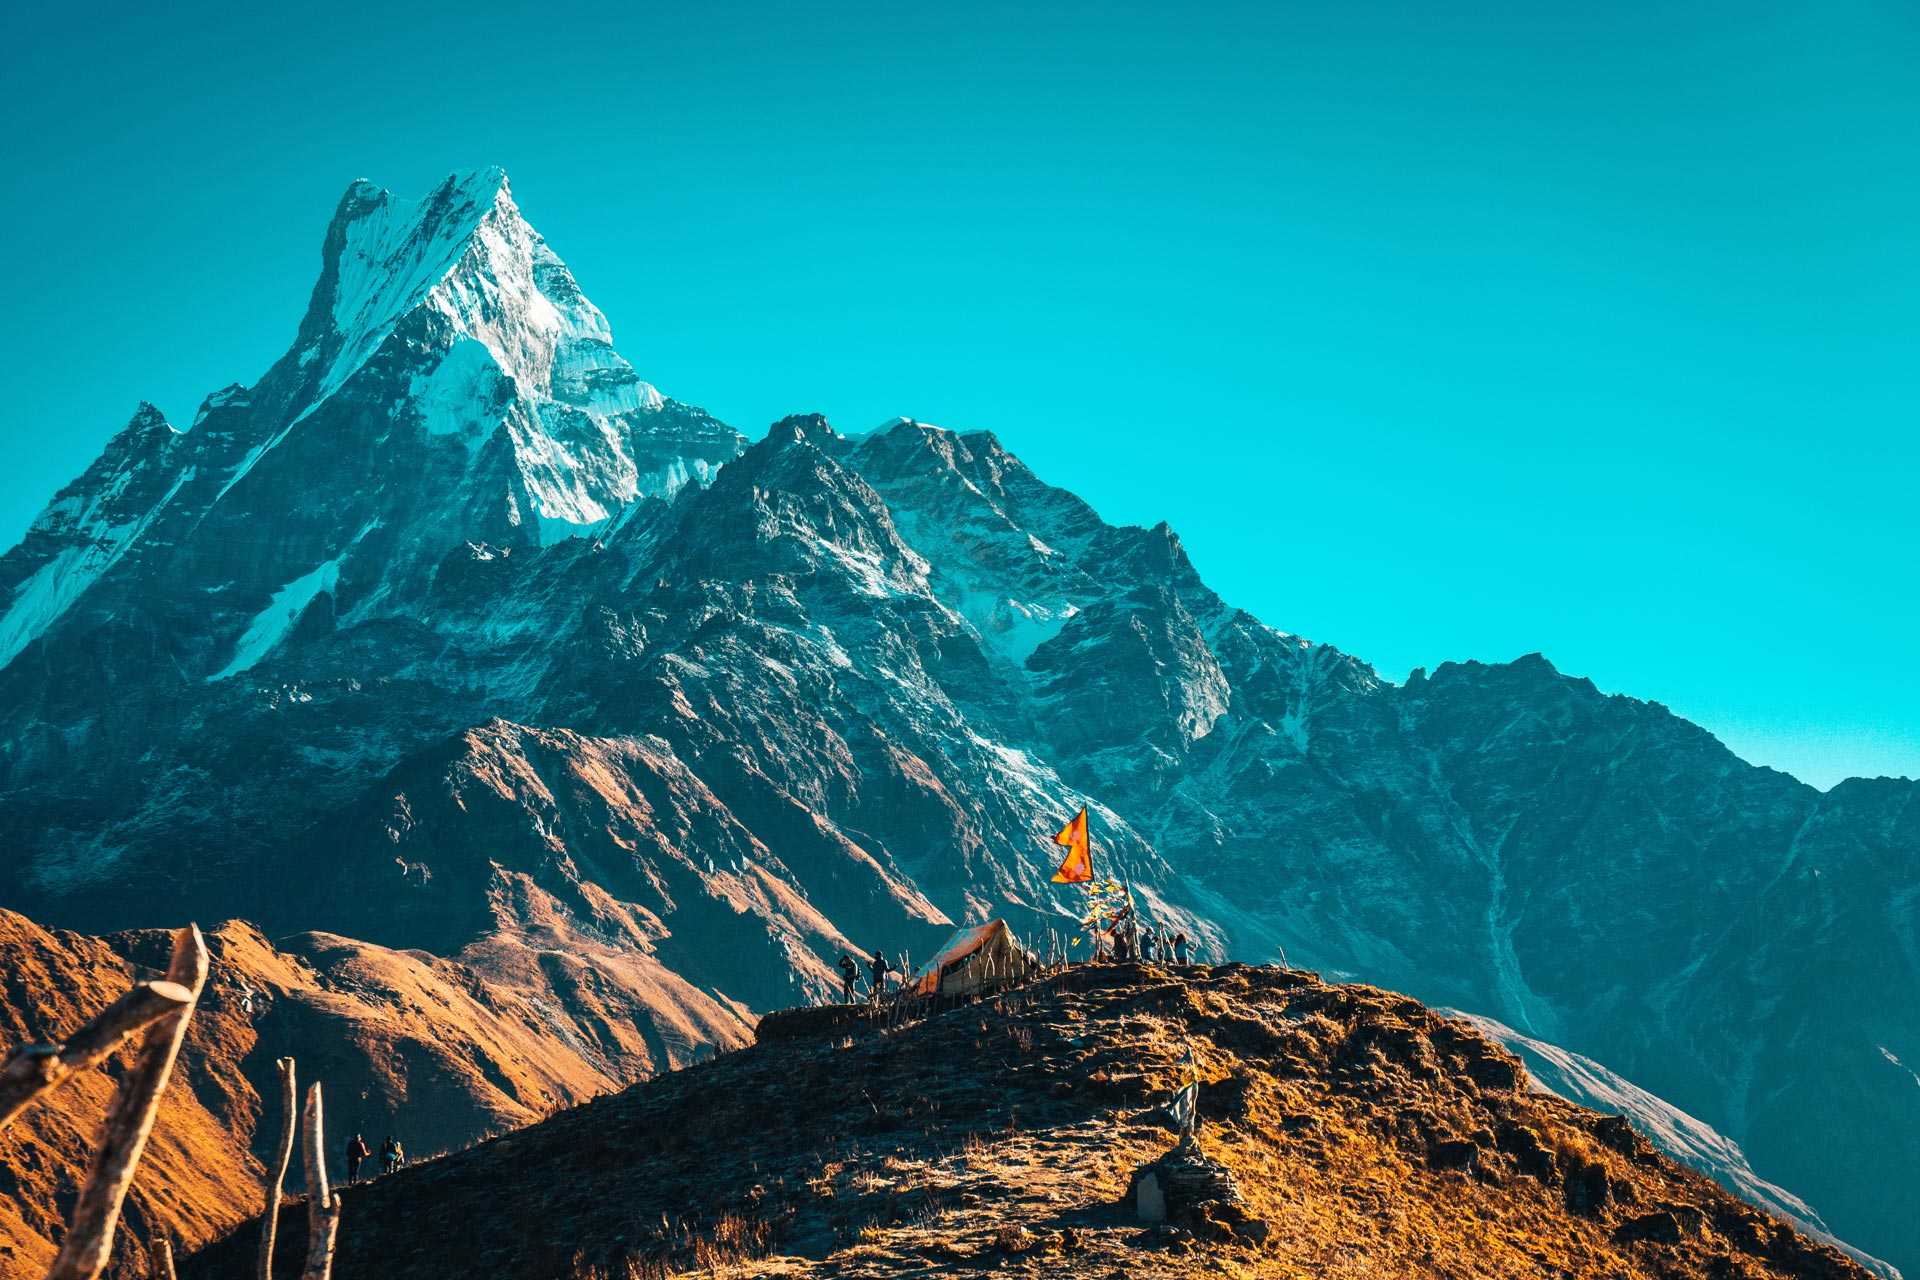 Point de vue sur le Machapuchare, dans la région des Annapurnas au Népal